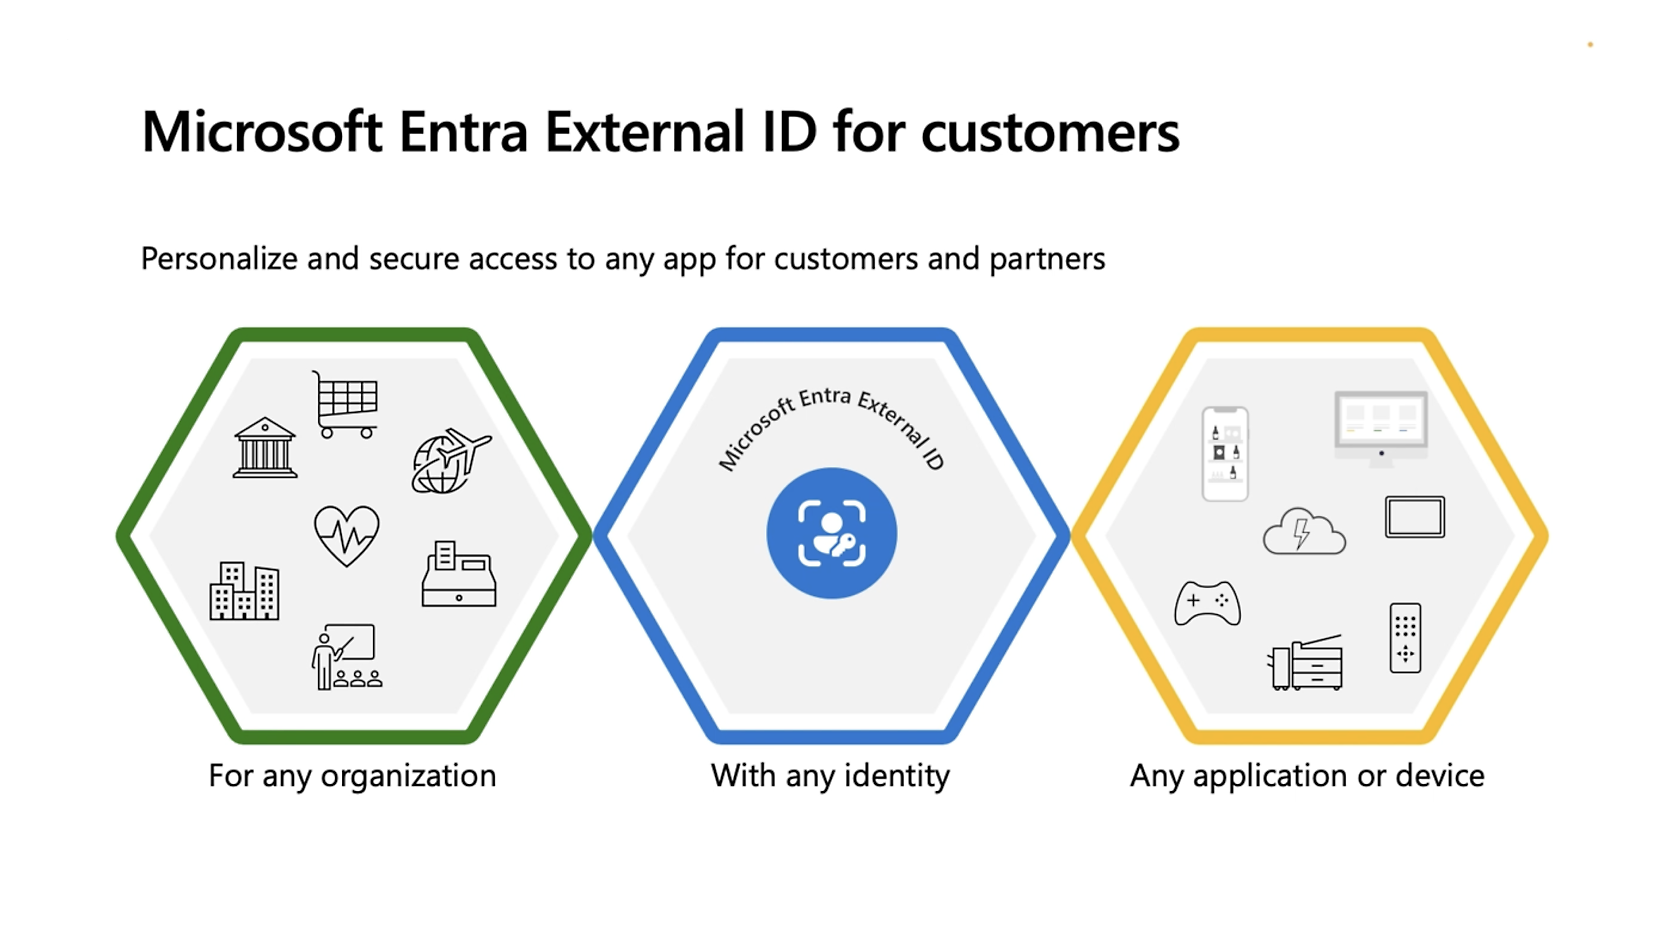 Eine Infografik, welche die Microsoft Entra External ID-Funktionen zeigt: drei bezeichnete Sechsecke